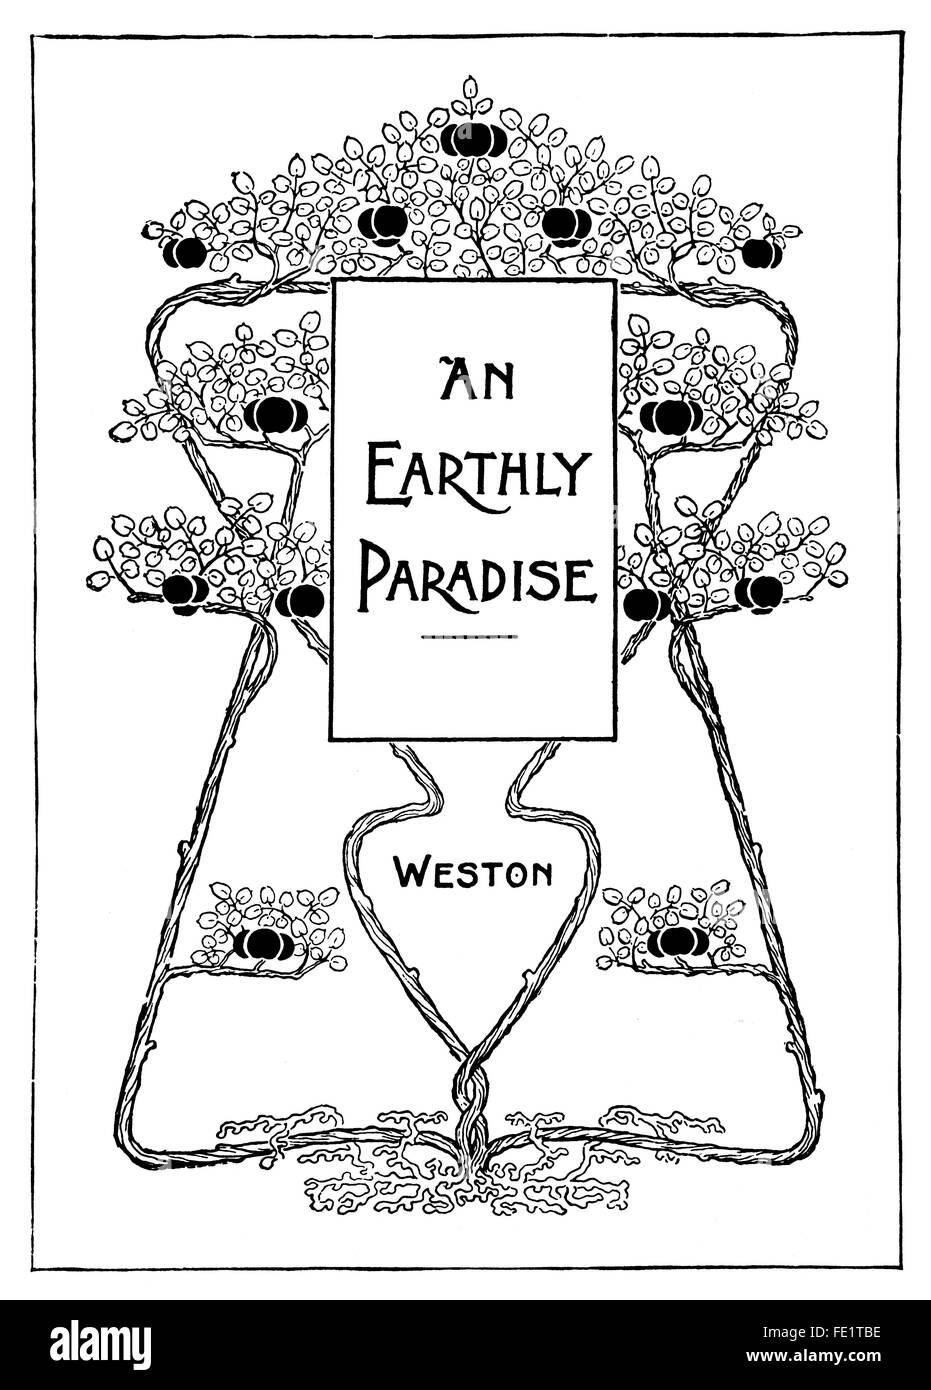 Ein irdisches Paradies von Herbert Dobby von East Molesey, Design für ein Tuch Buch Cover Jugendstil Linie Illustration aus dem Jahr 1897 Stockfoto